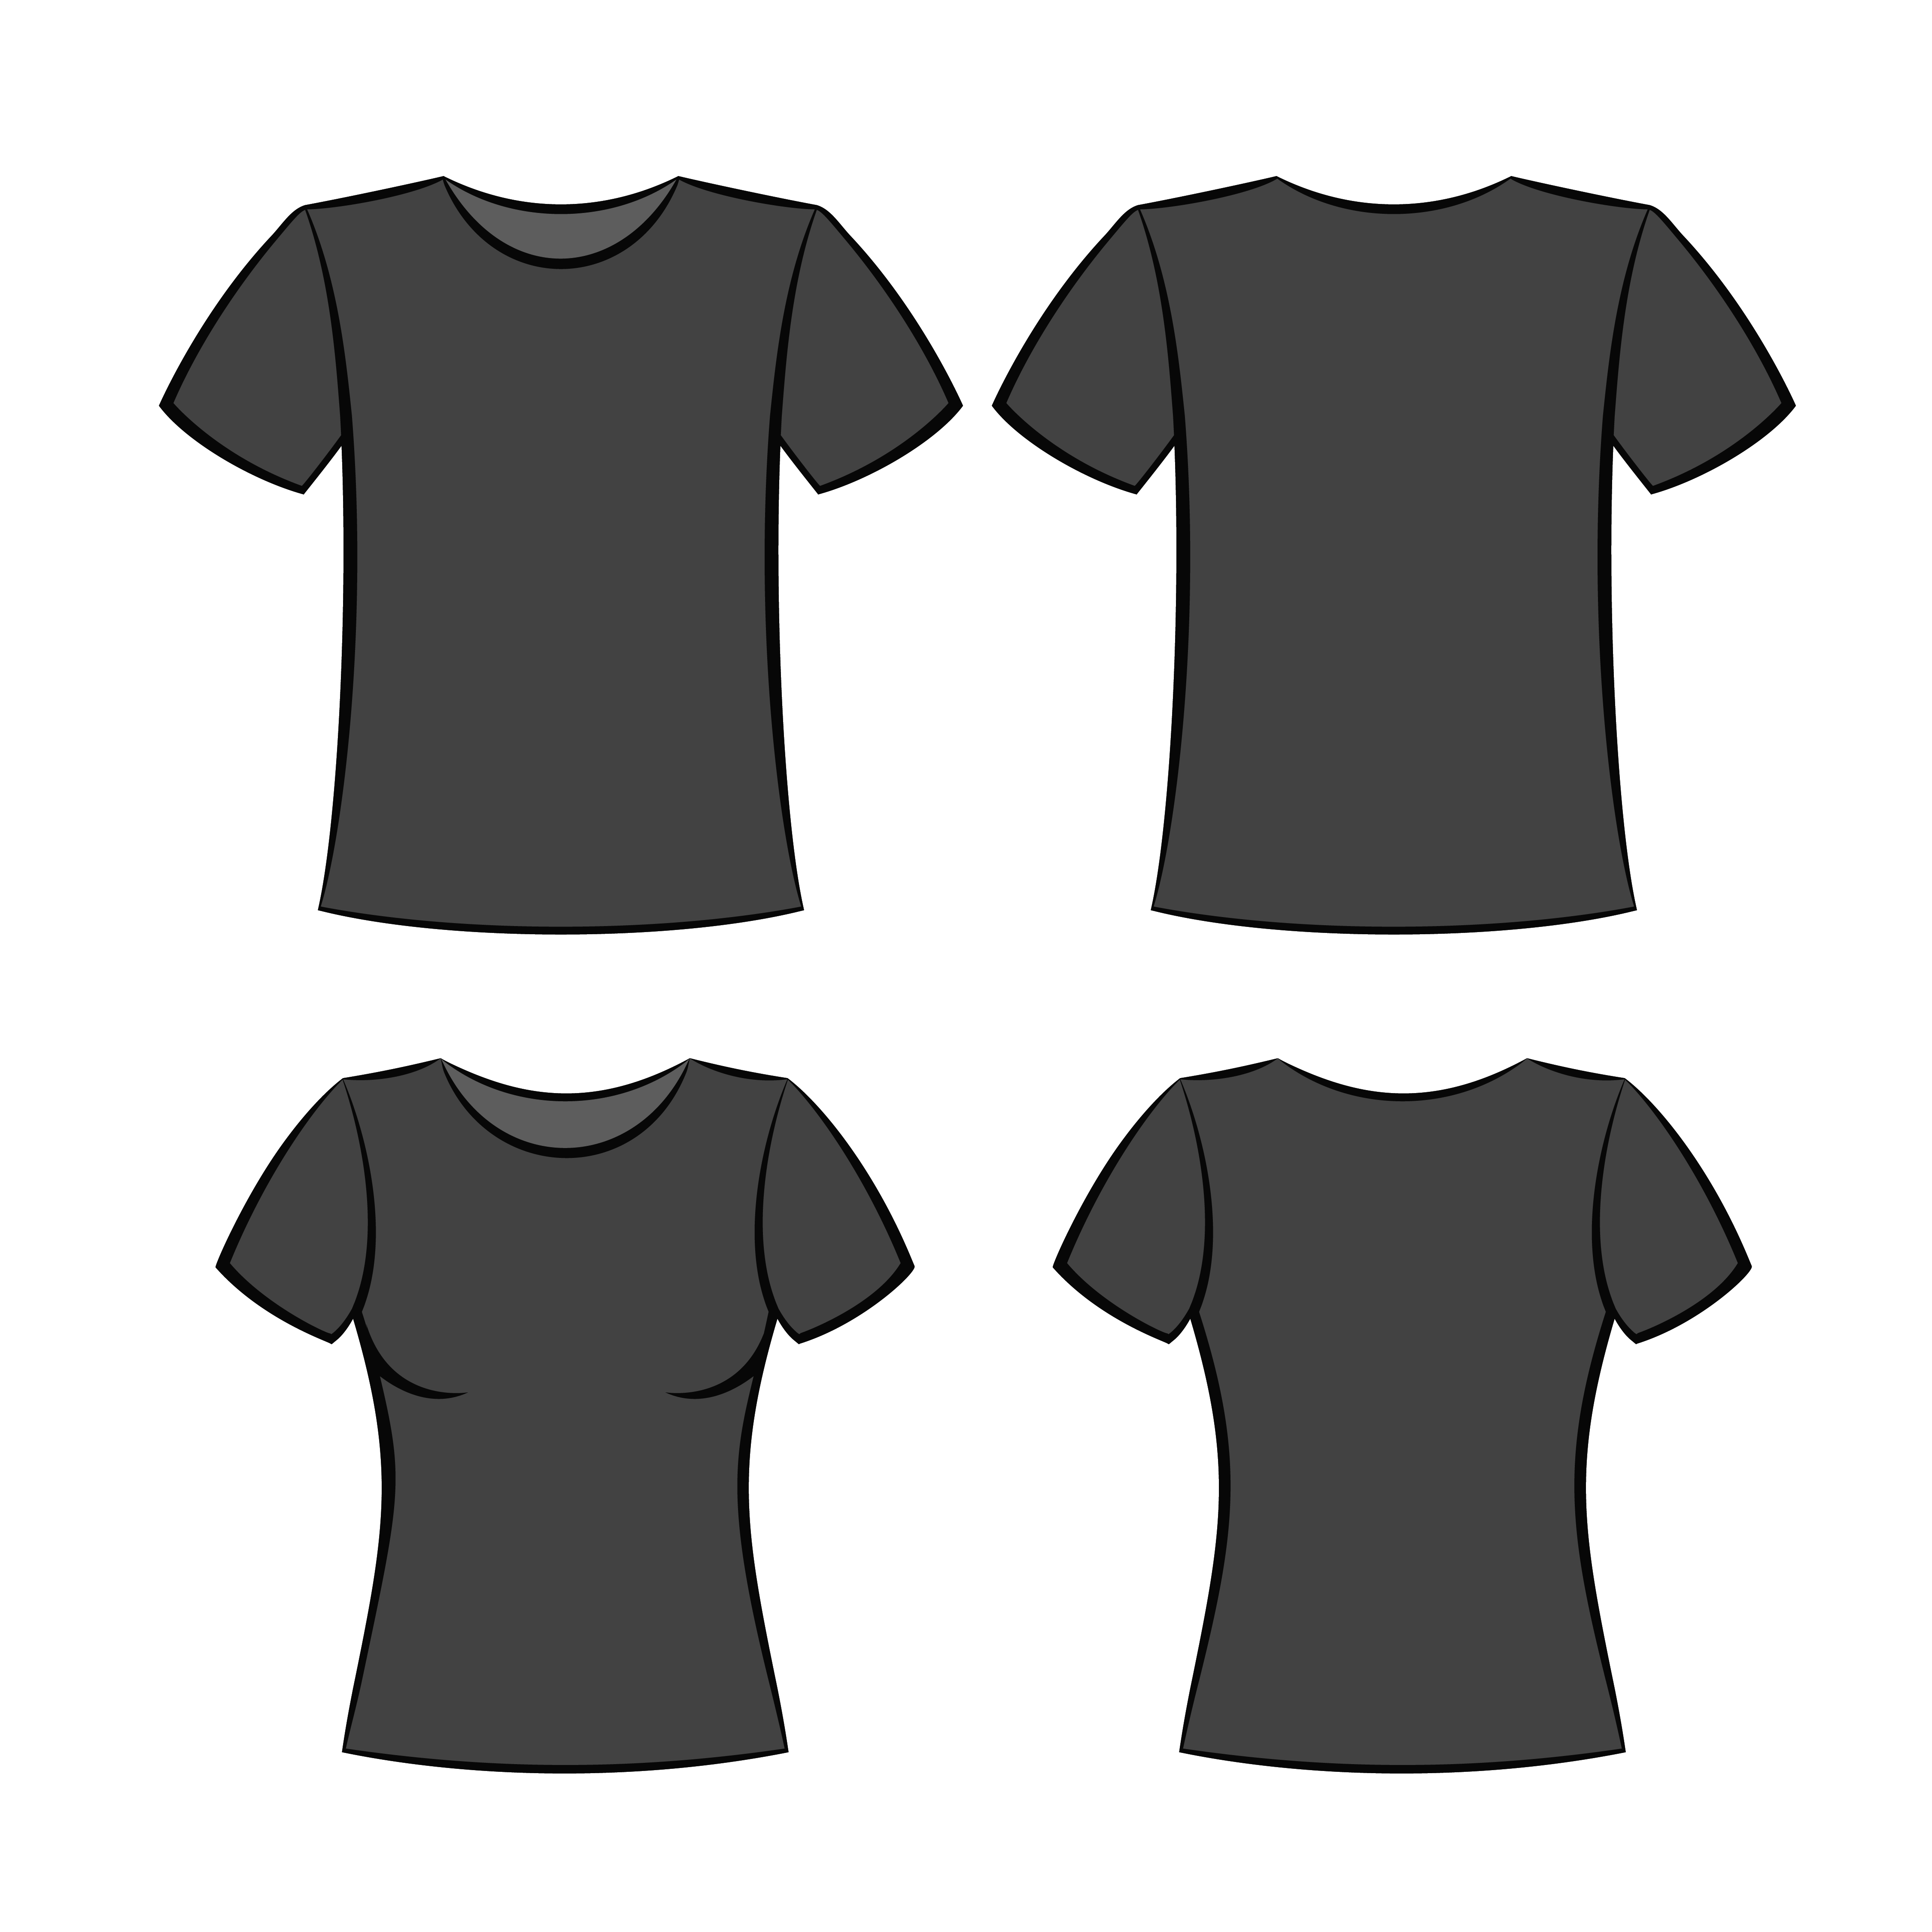 Download black t-shirt - Download Free Vectors, Clipart Graphics & Vector Art